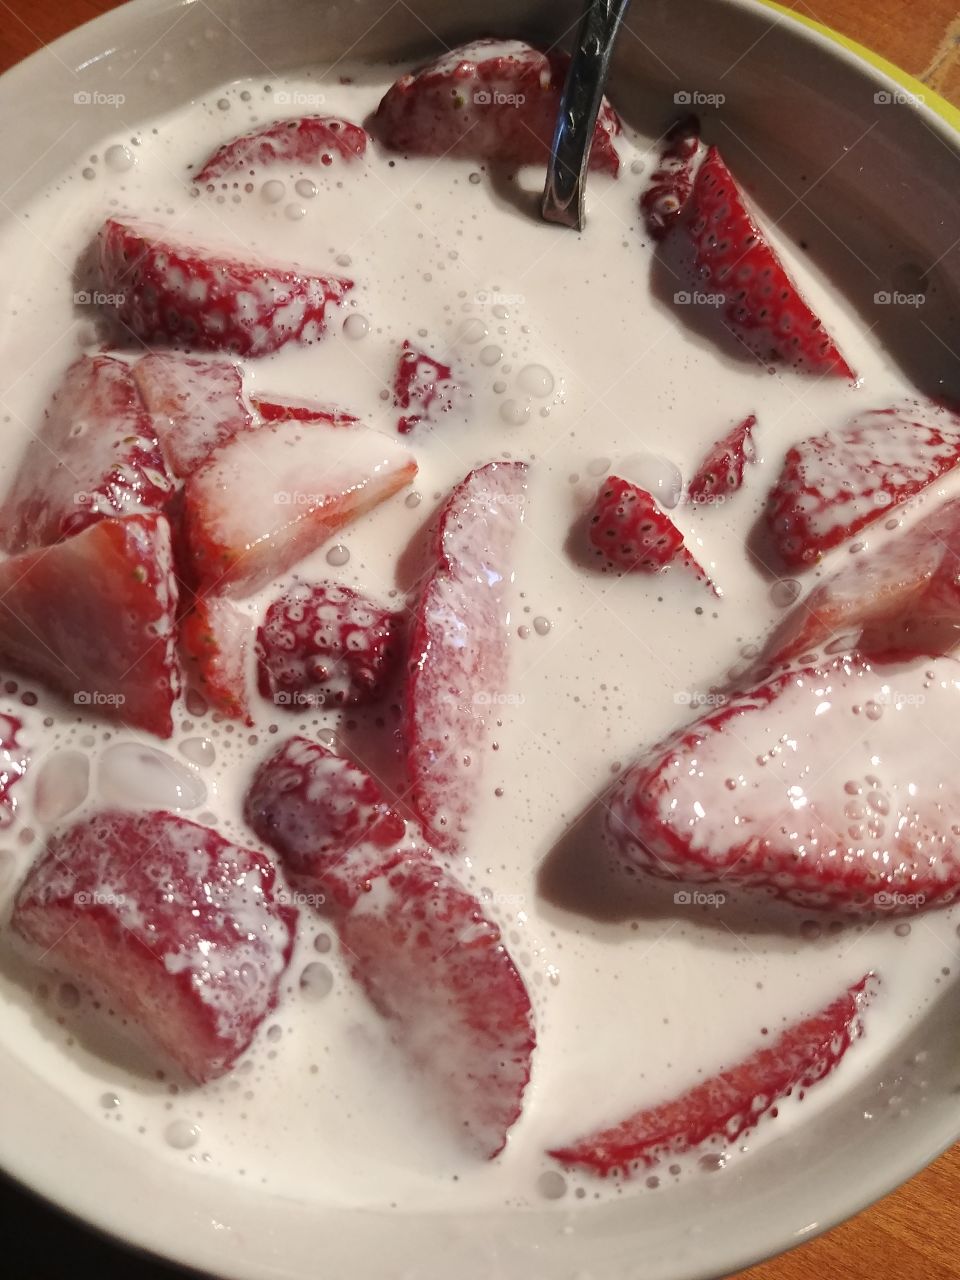 strawberry cream and sugar 😍